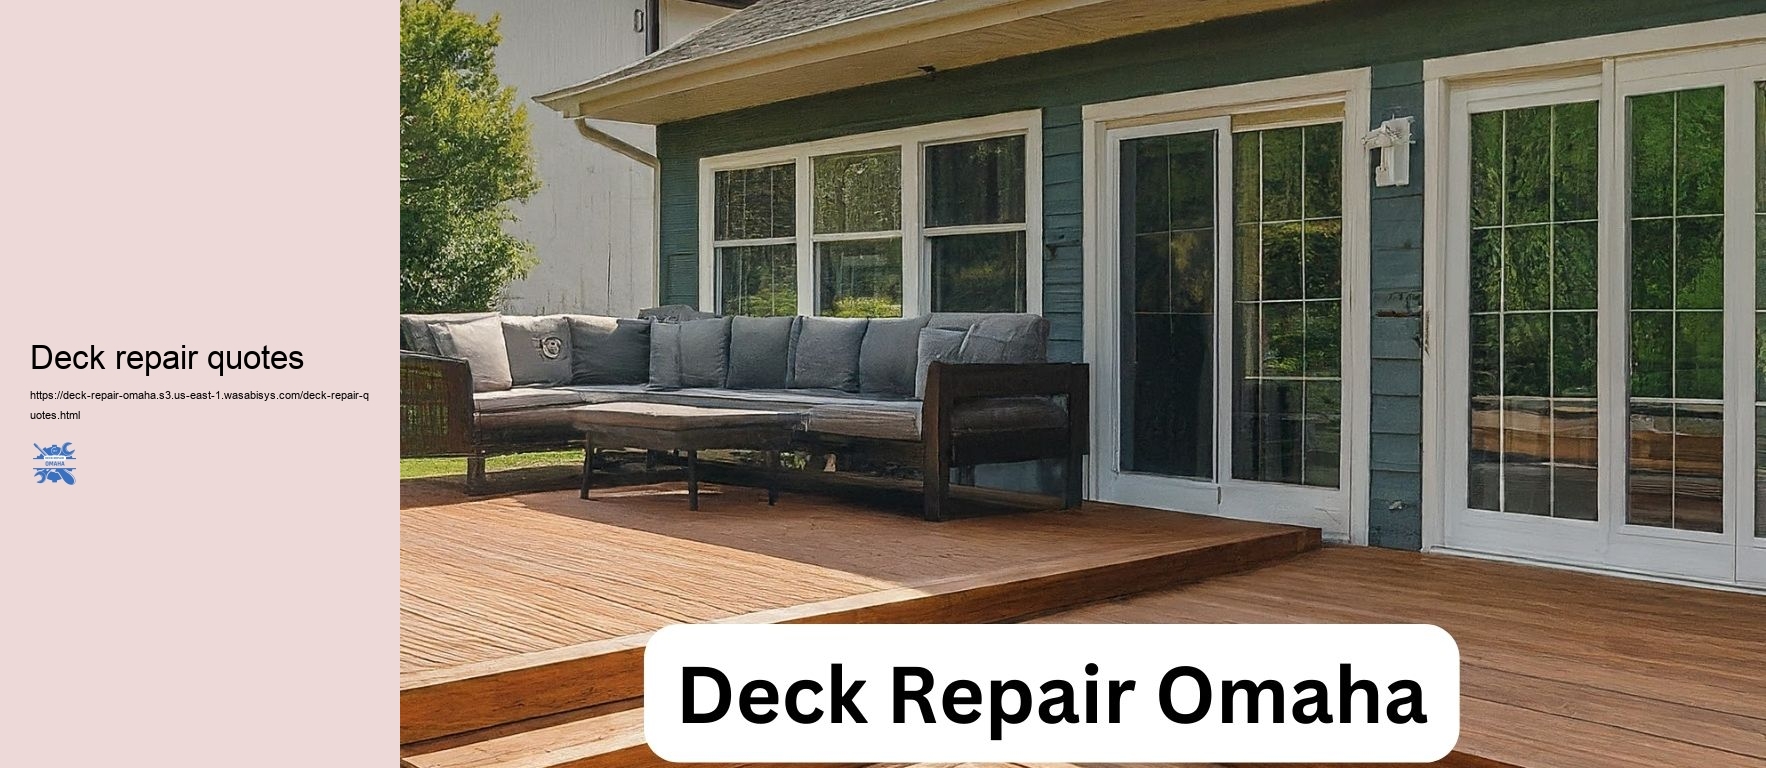 Deck repair quotes